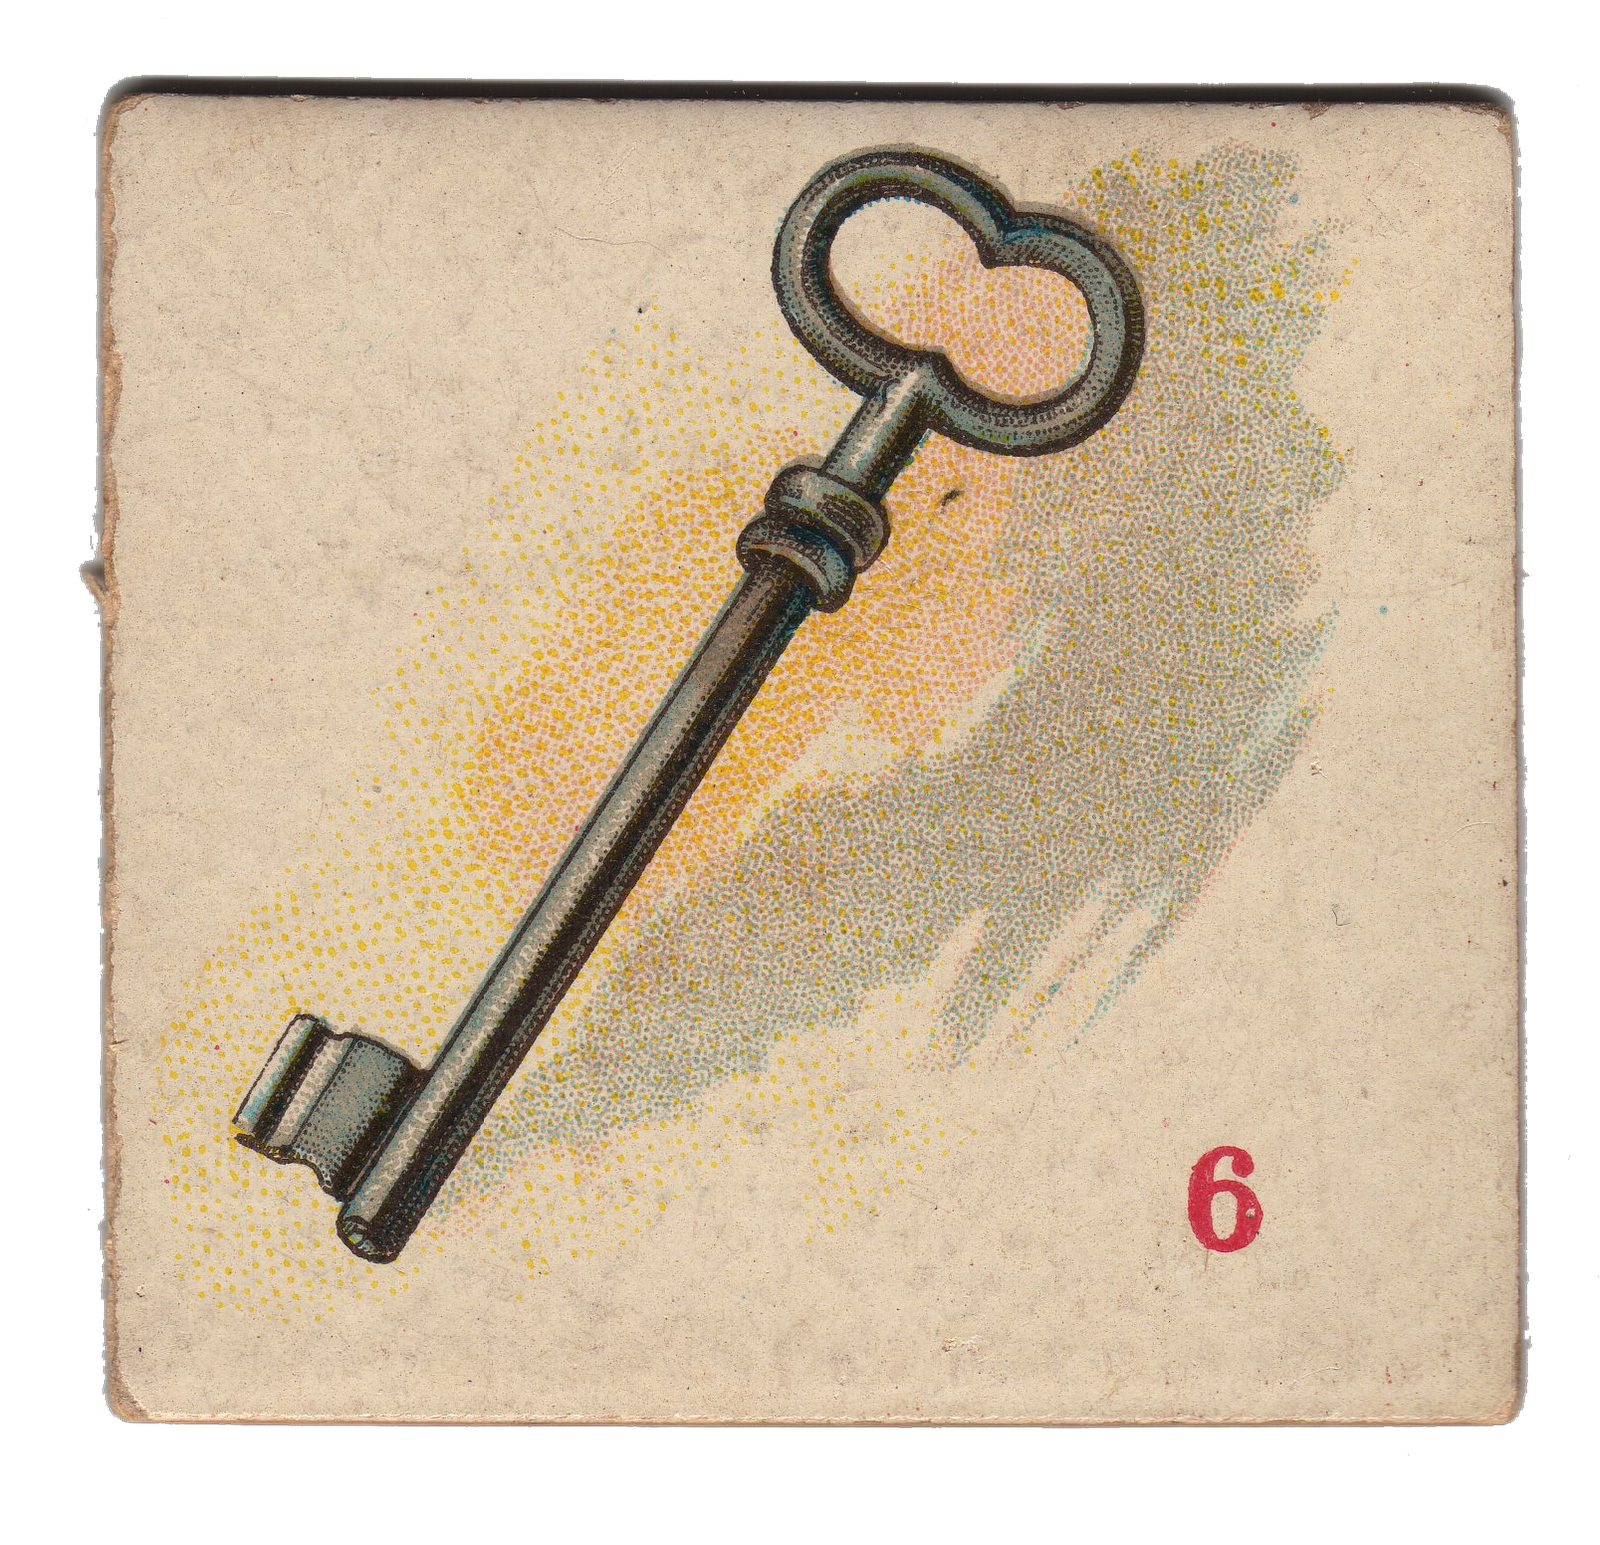 antique key clipart - photo #33